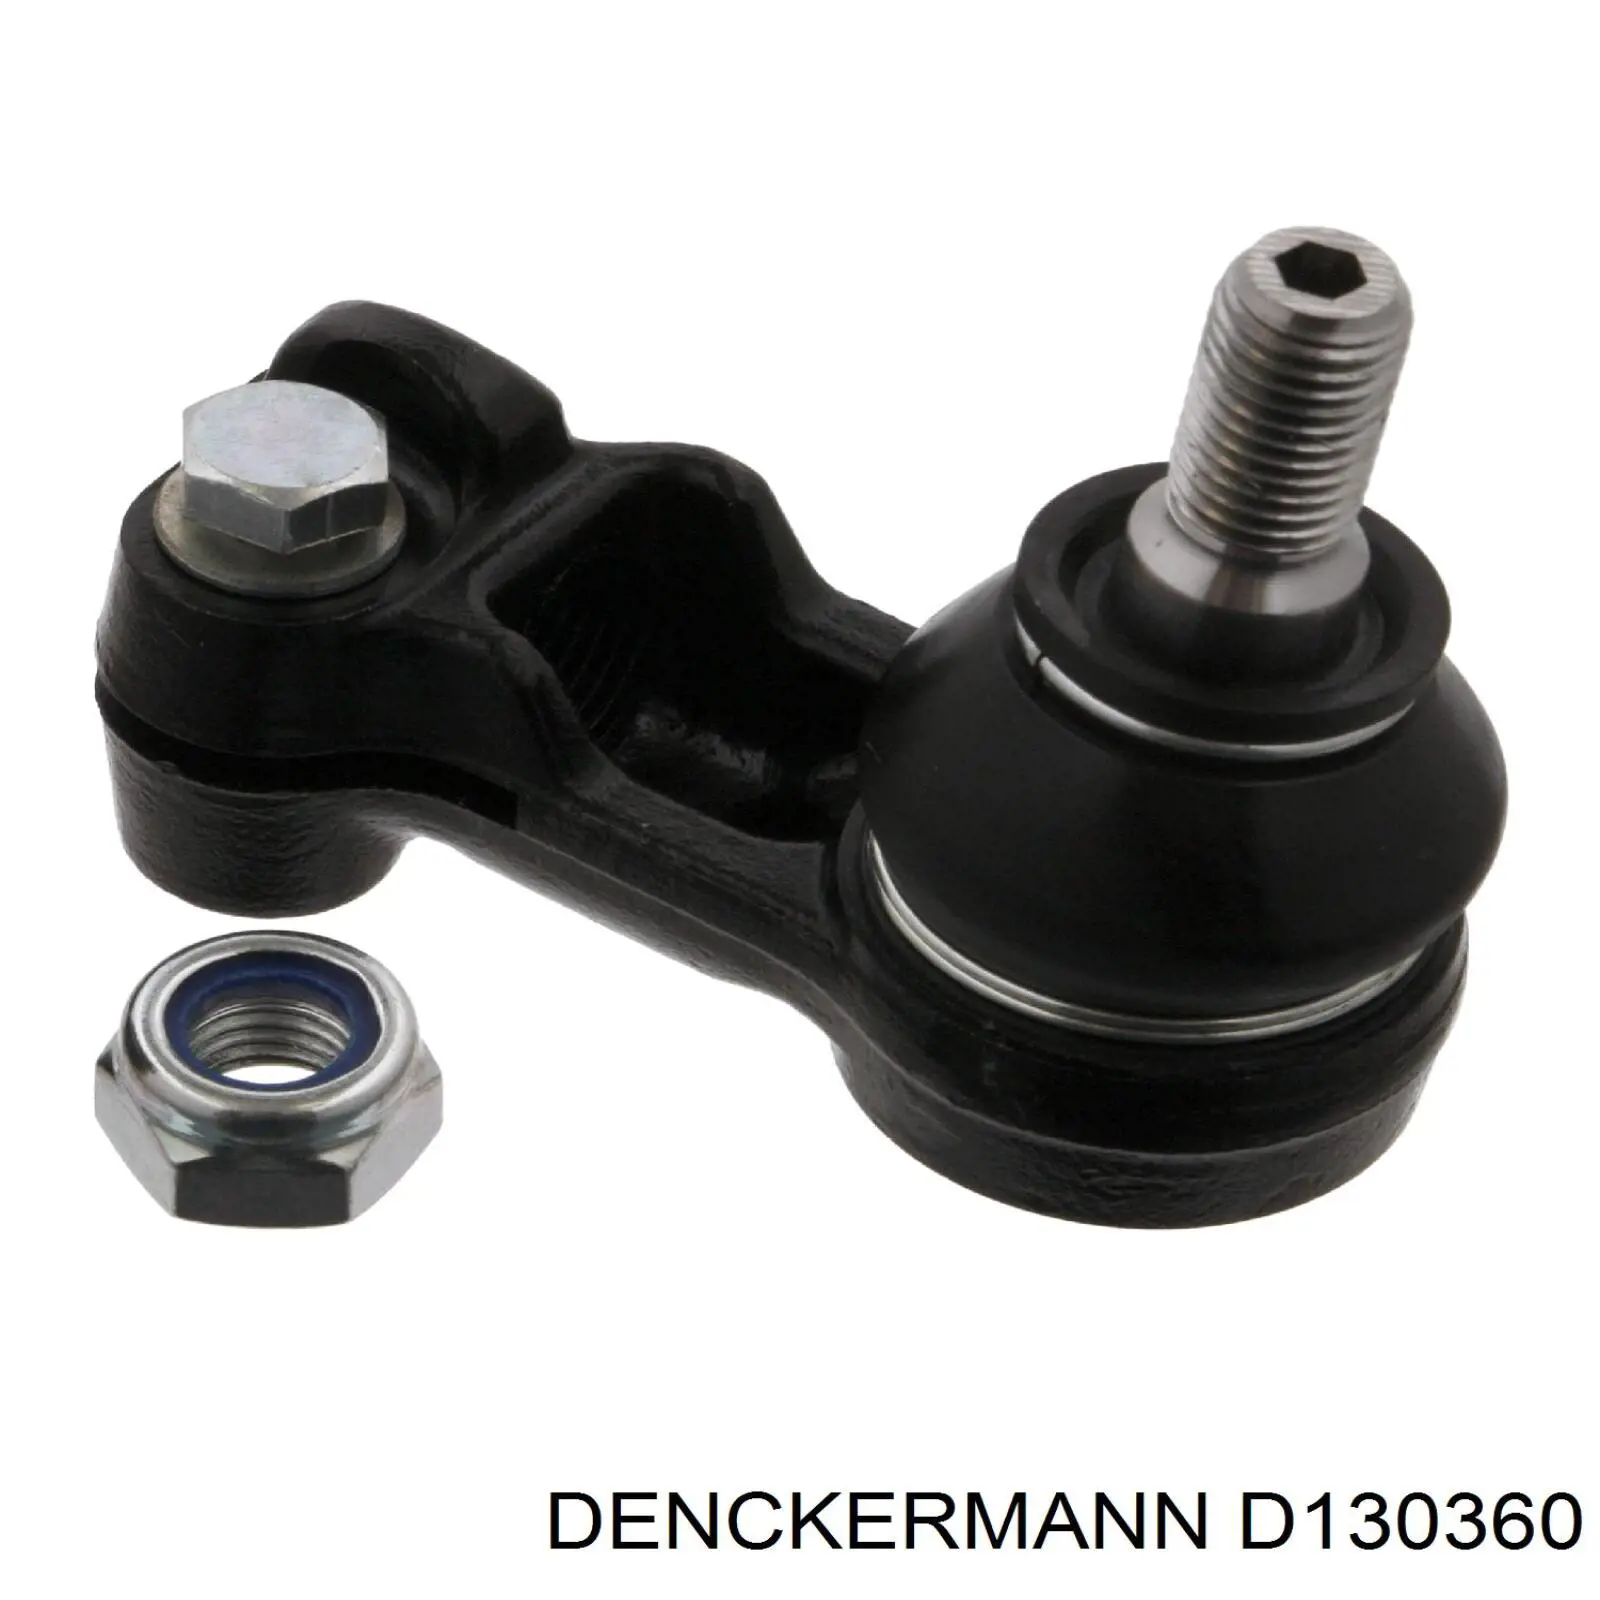 D130360 Denckermann rótula de suspensión inferior